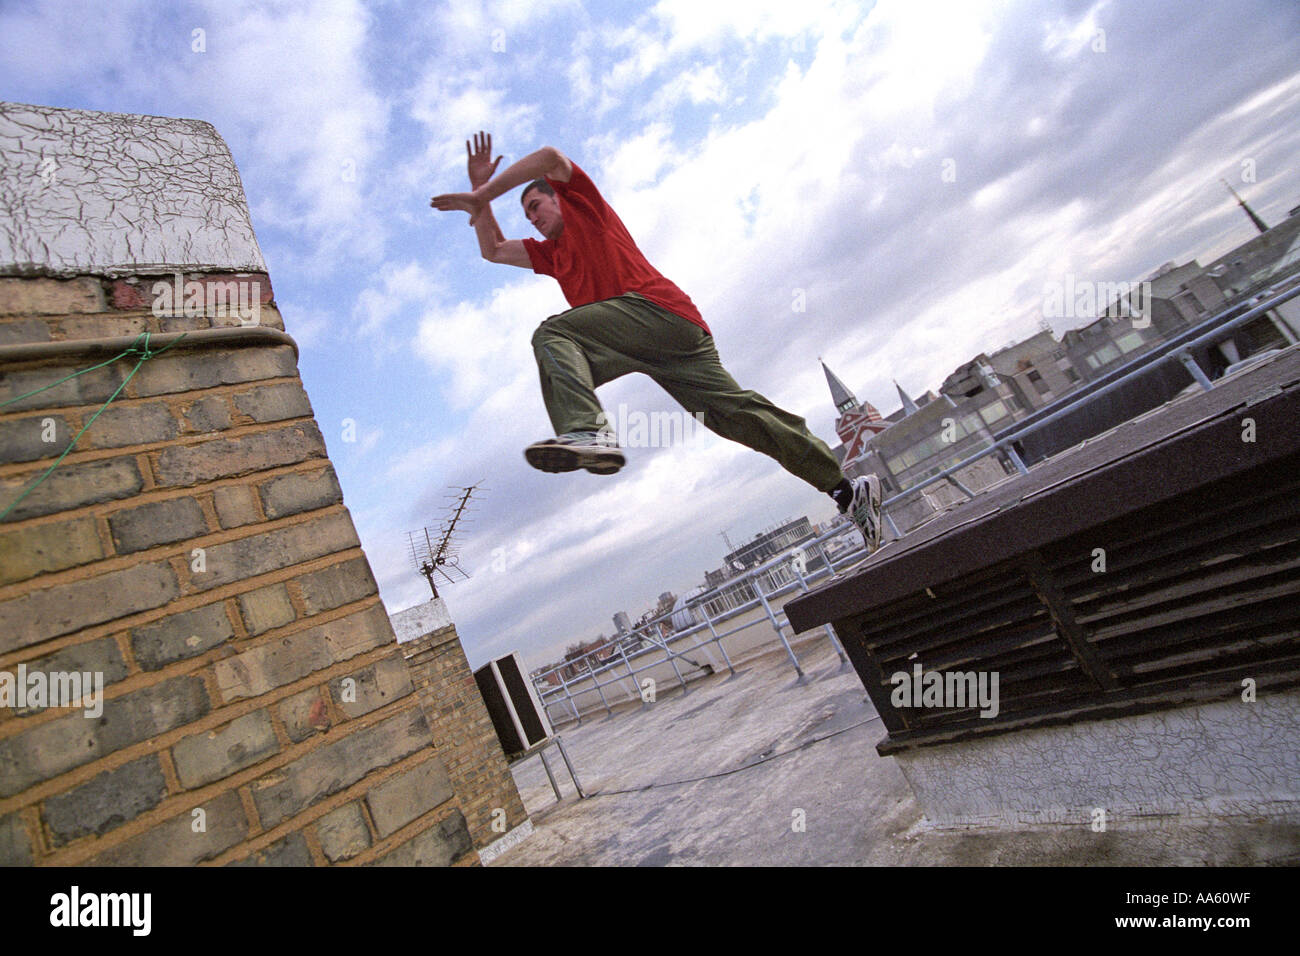 Ein Parkour-Freerunning-Athlet springt zwischen den Wänden auf einem Dach Stockfoto